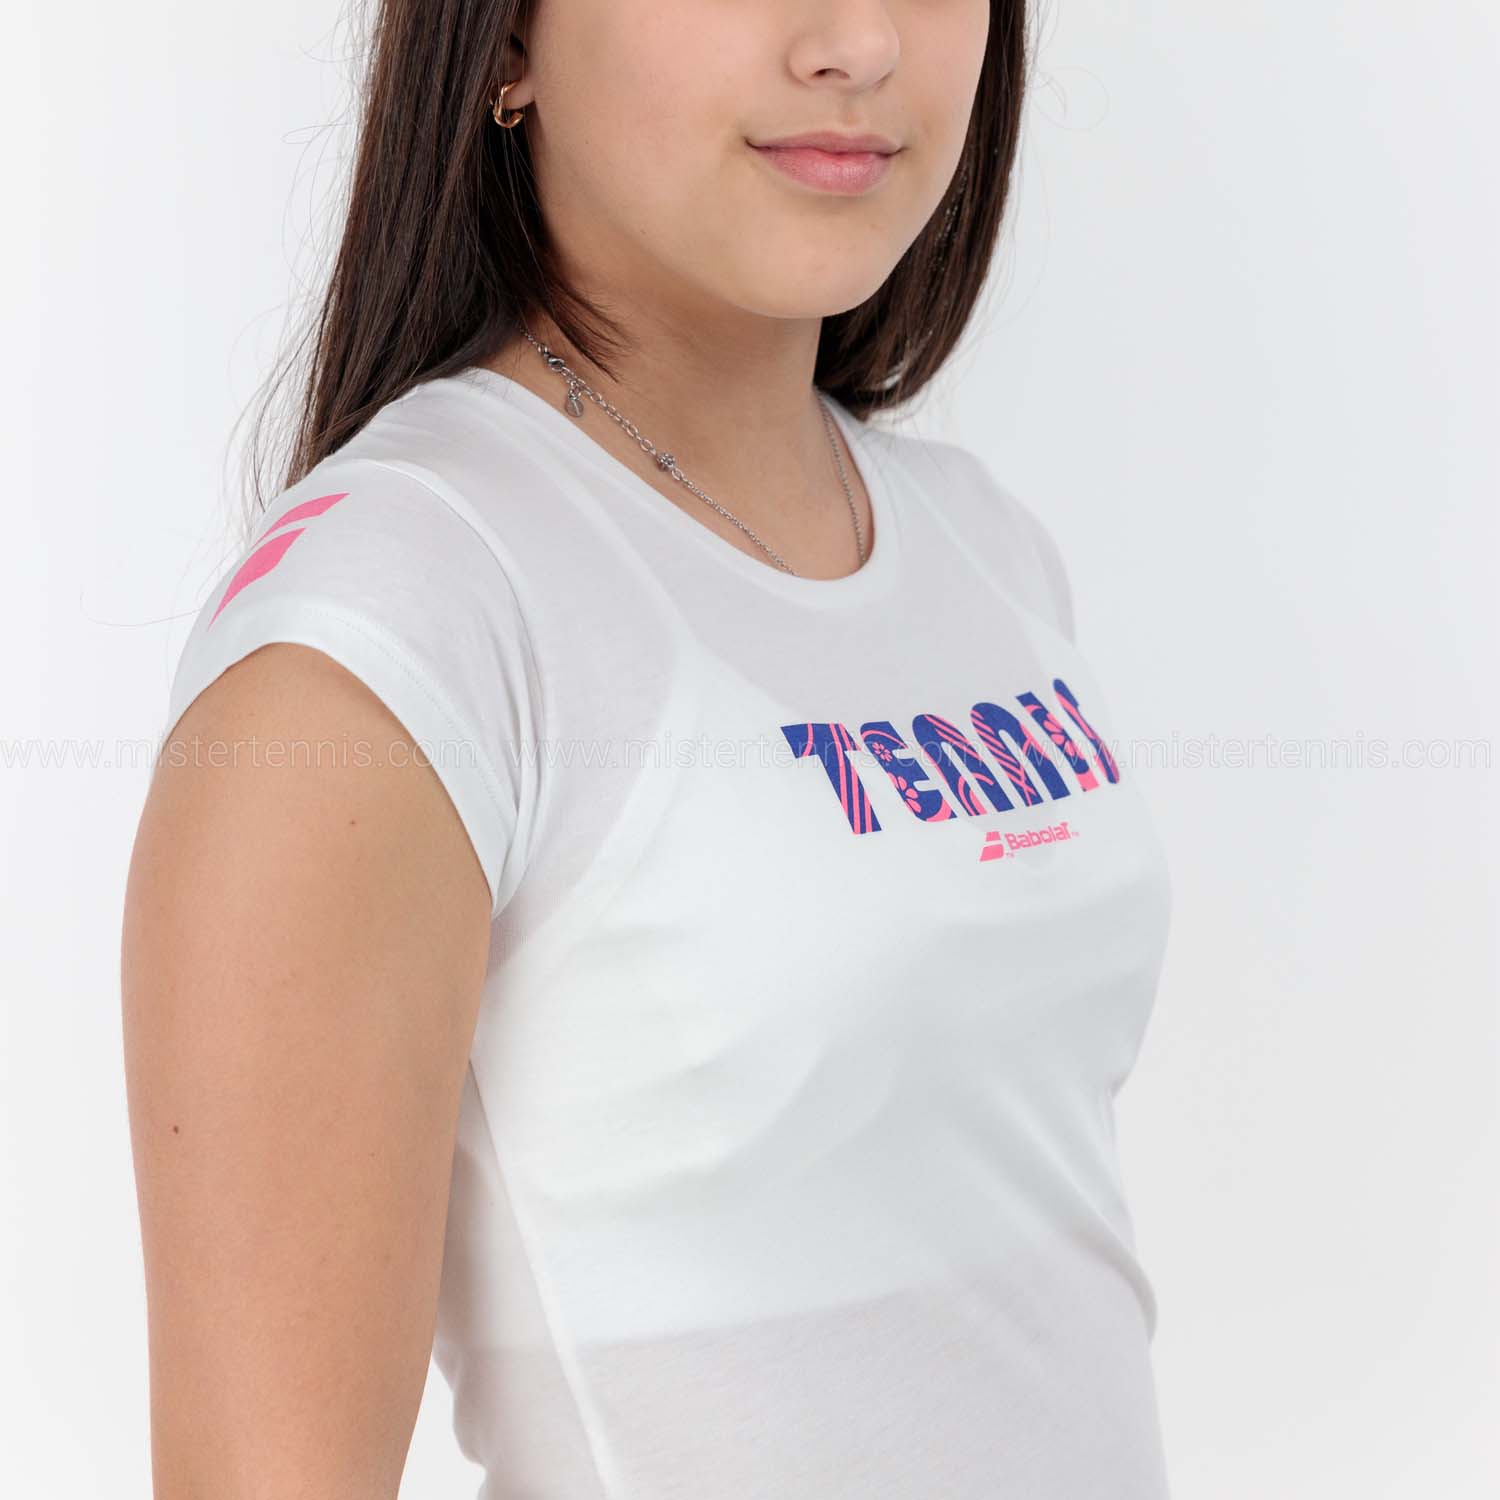 Babolat Exercise T-Shirt Girl - White